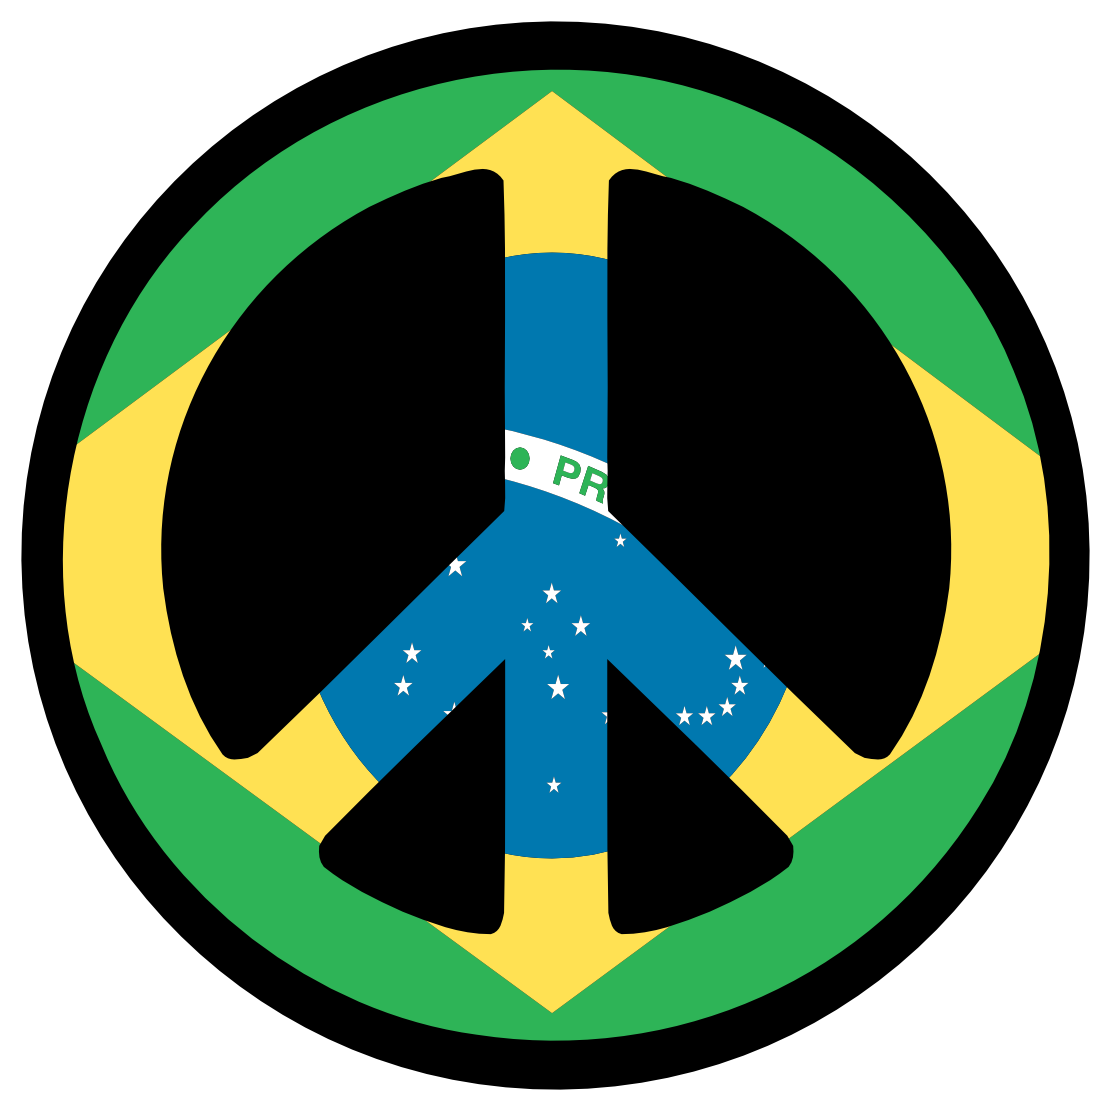 Vector Brazil Flag - ClipArt Best